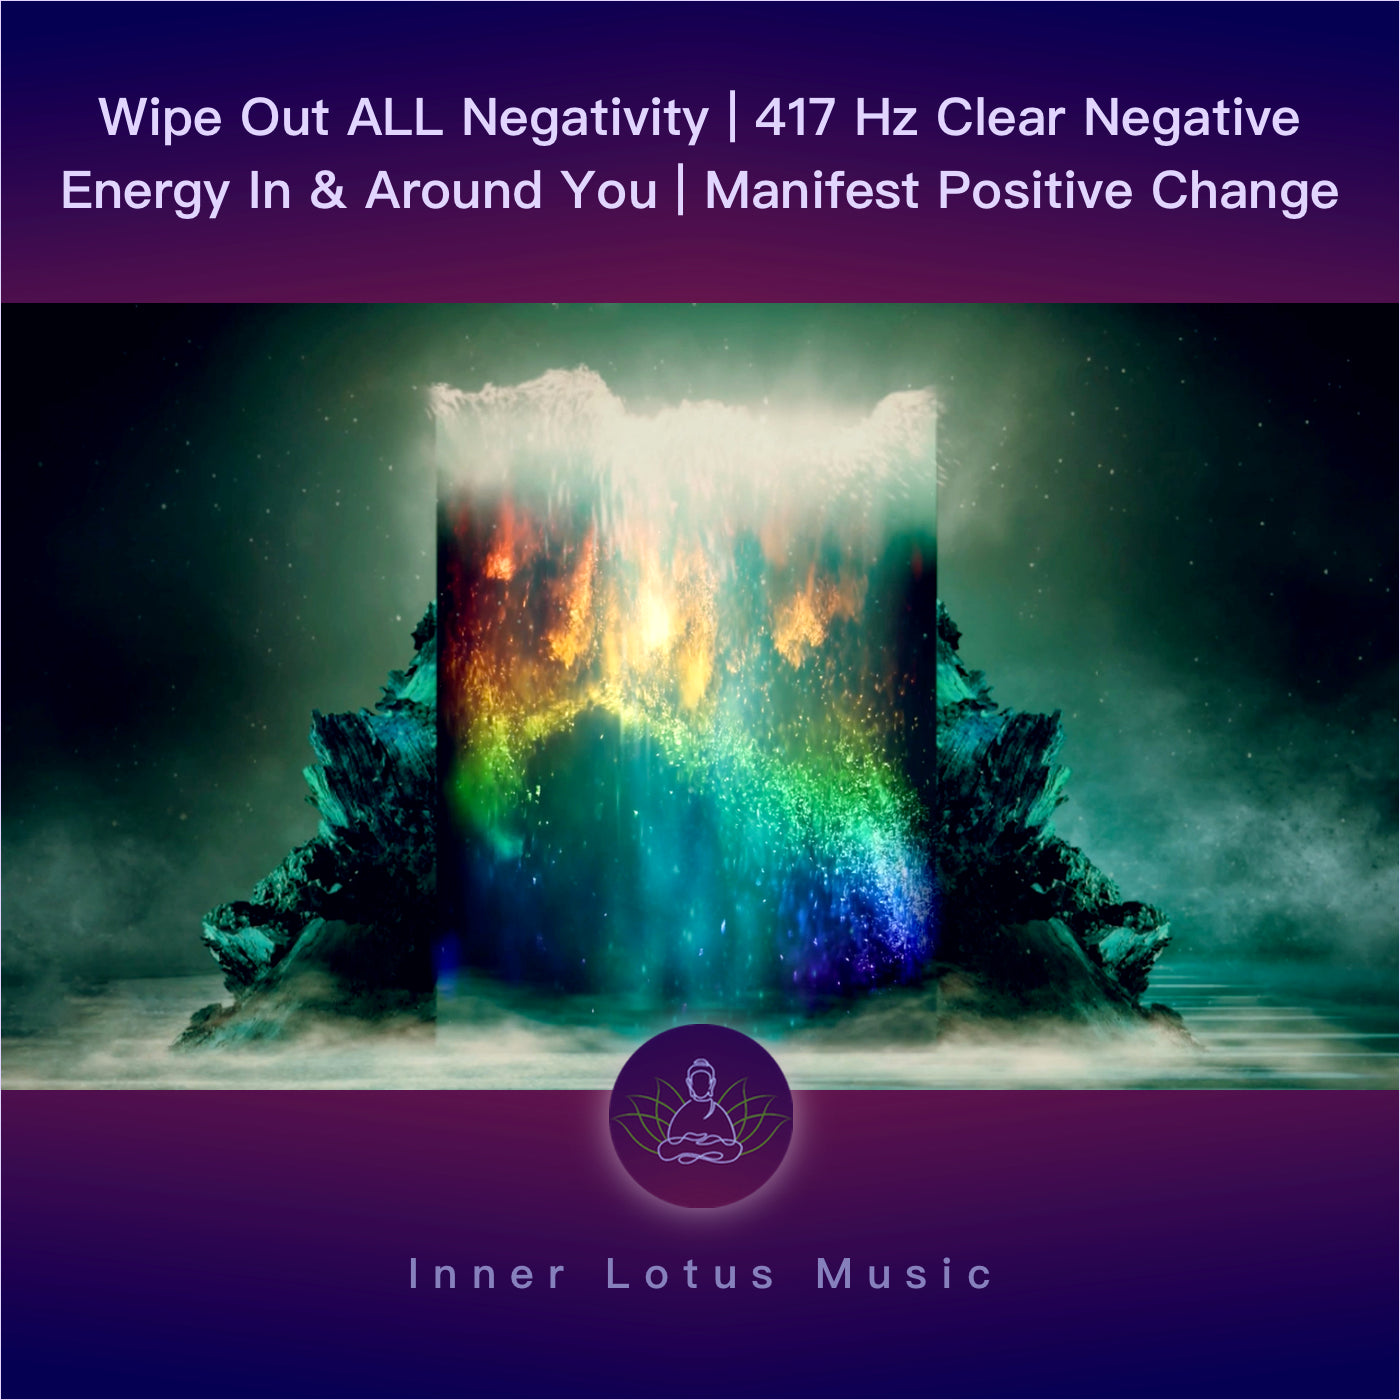 Élimine TOUTE Négativité | Purifie Ton Énergie & Manifeste Des Changements Positifs | Musique 417 Hz